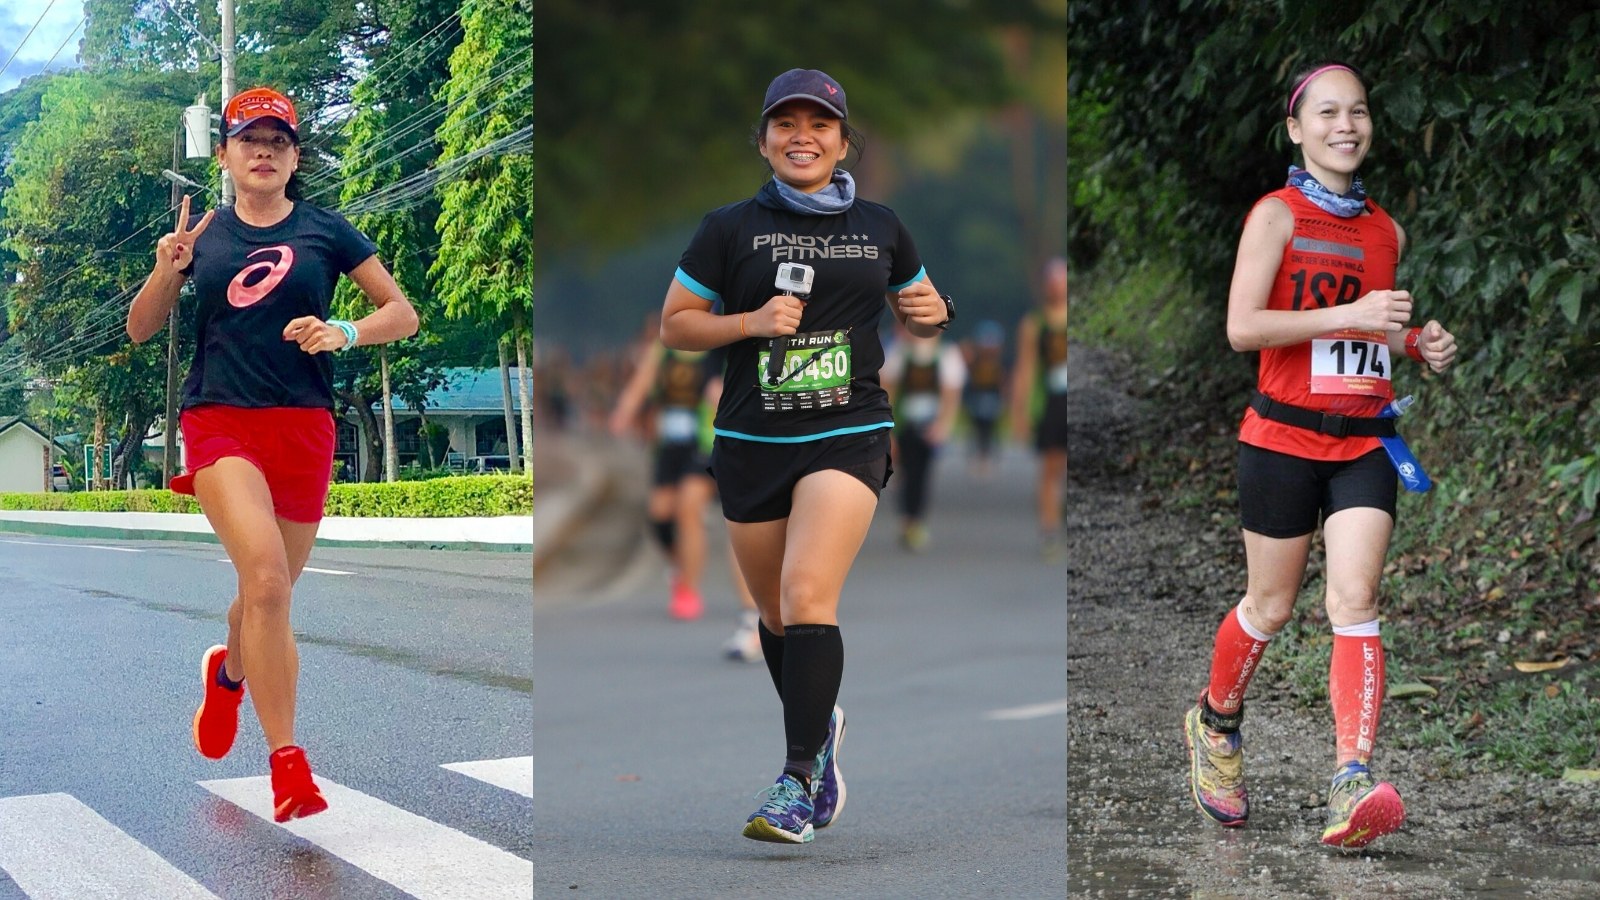 Philippines Women Marathoners: Running is empowering women